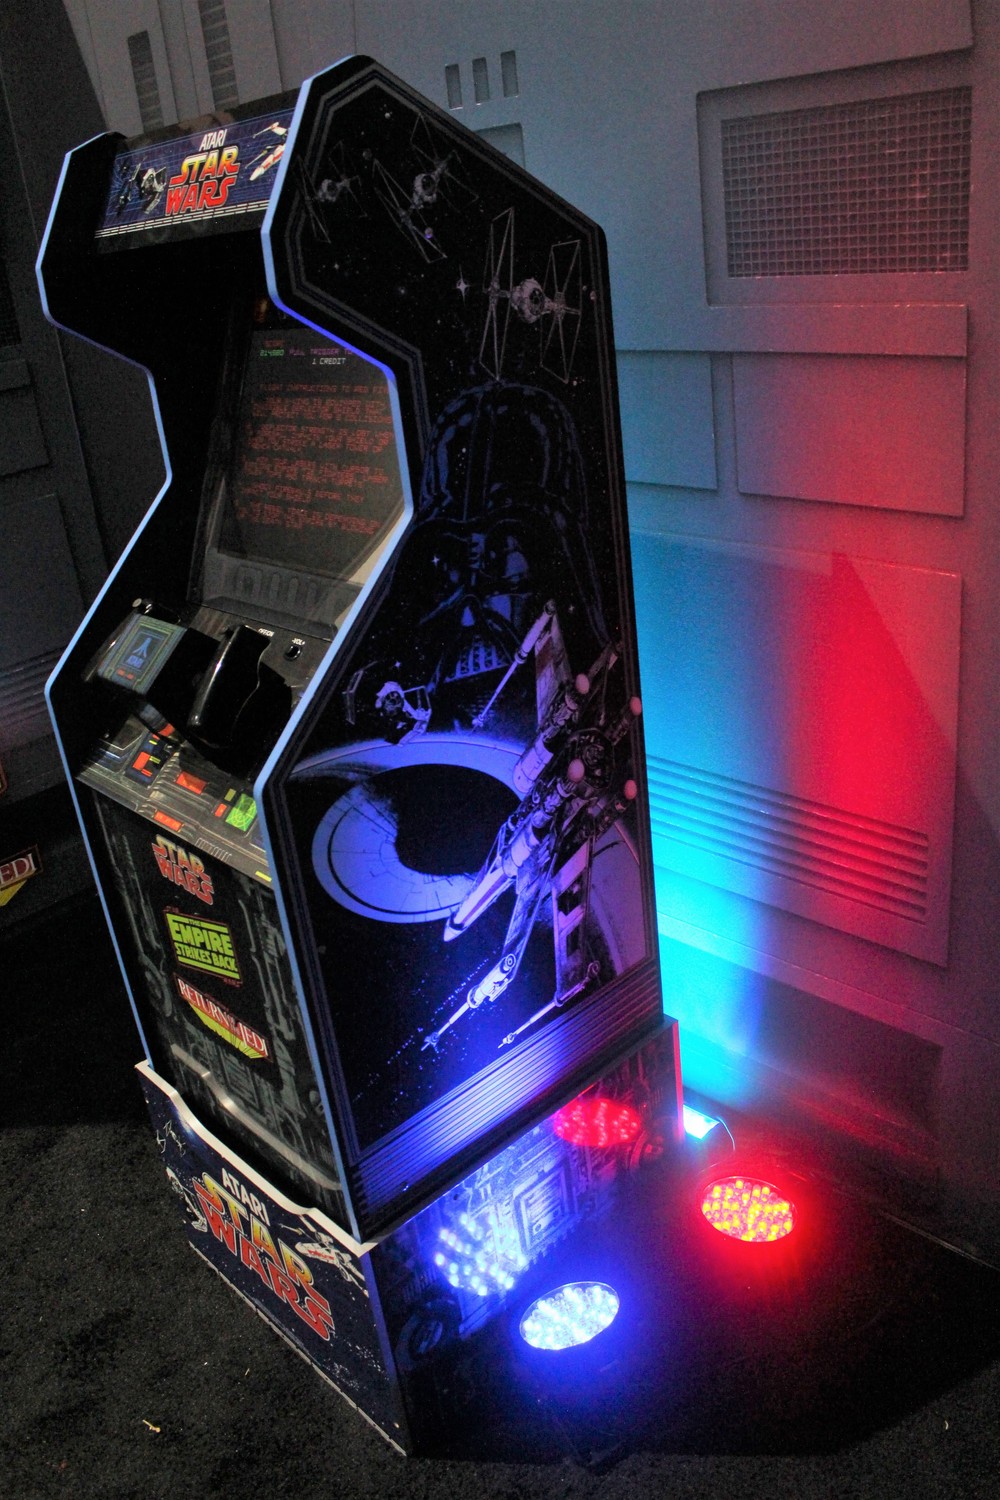 tastemakers-arcade1up-003.jpg